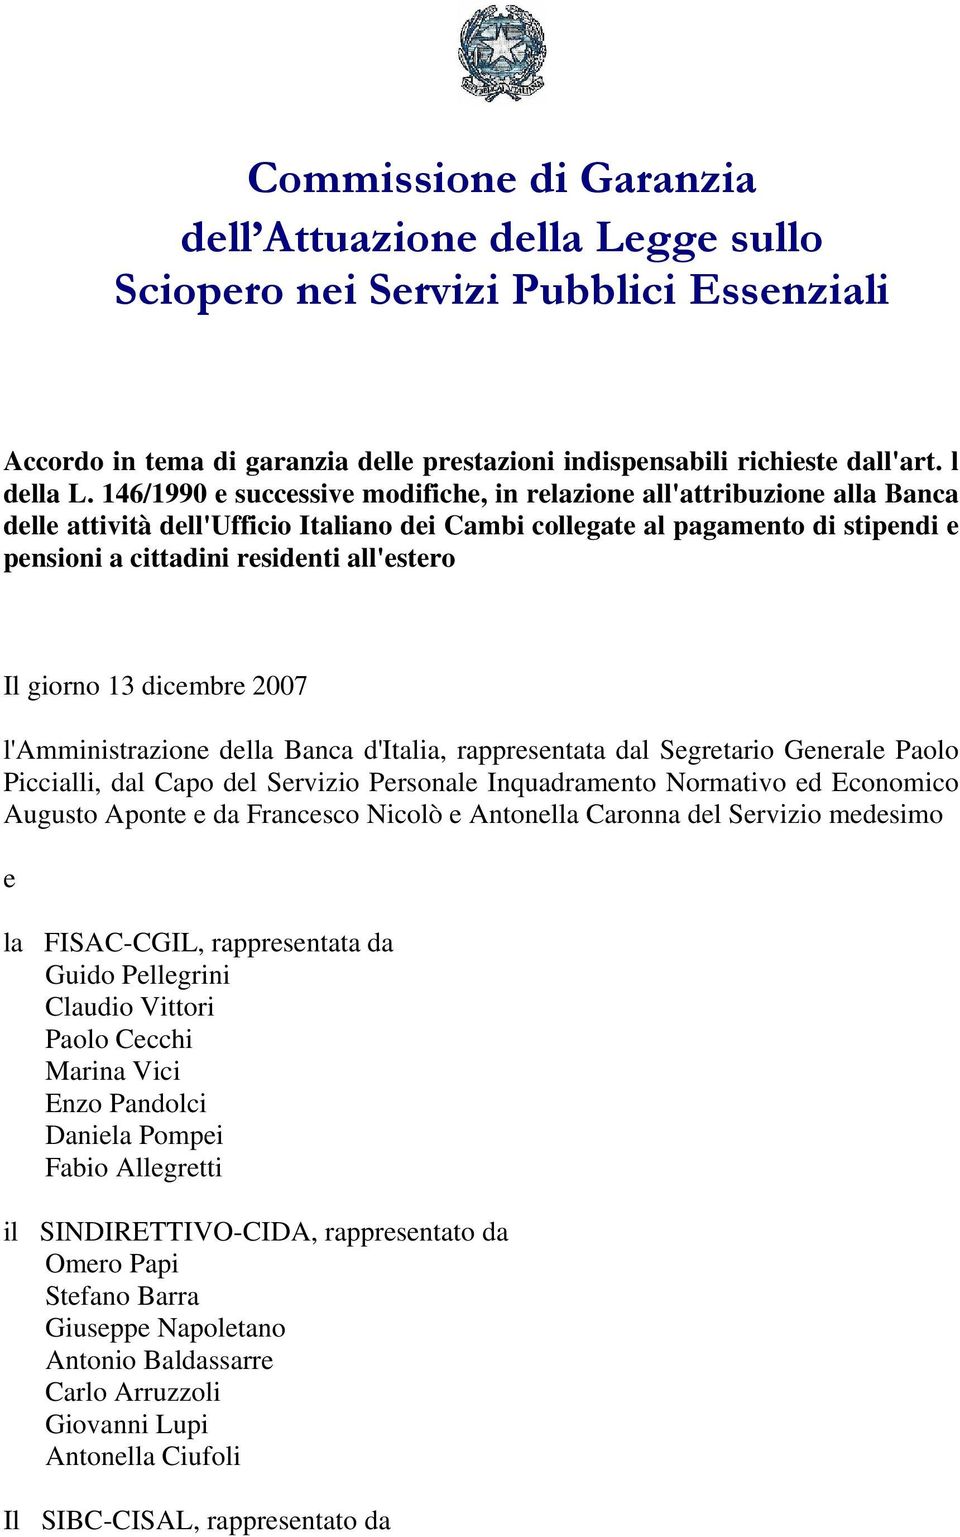 Il giorno 13 dicembre 2007 l'amministrazione della Banca d'italia, rappresentata dal Segretario Generale Paolo Piccialli, dal Capo del Servizio Personale Inquadramento Normativo ed Economico Augusto